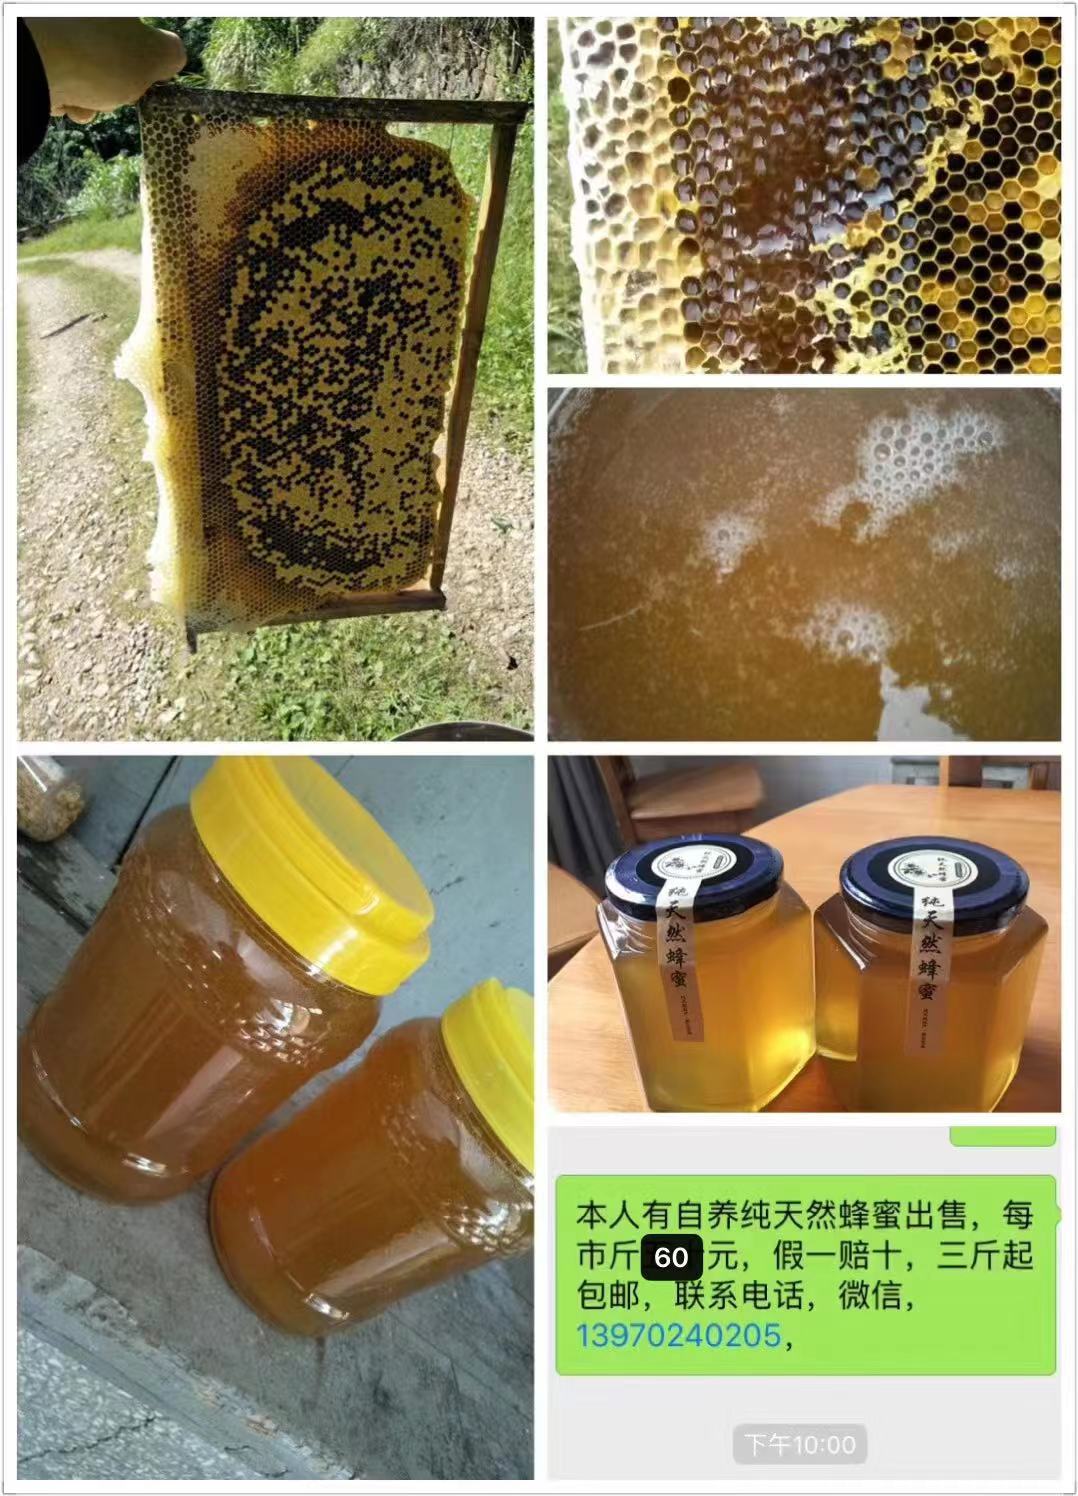 武汉蜂蜜公司-武汉蜂蜜批发-武汉蜂蜜直销-武汉蜂蜜报价-武汉蜂蜜哪家好